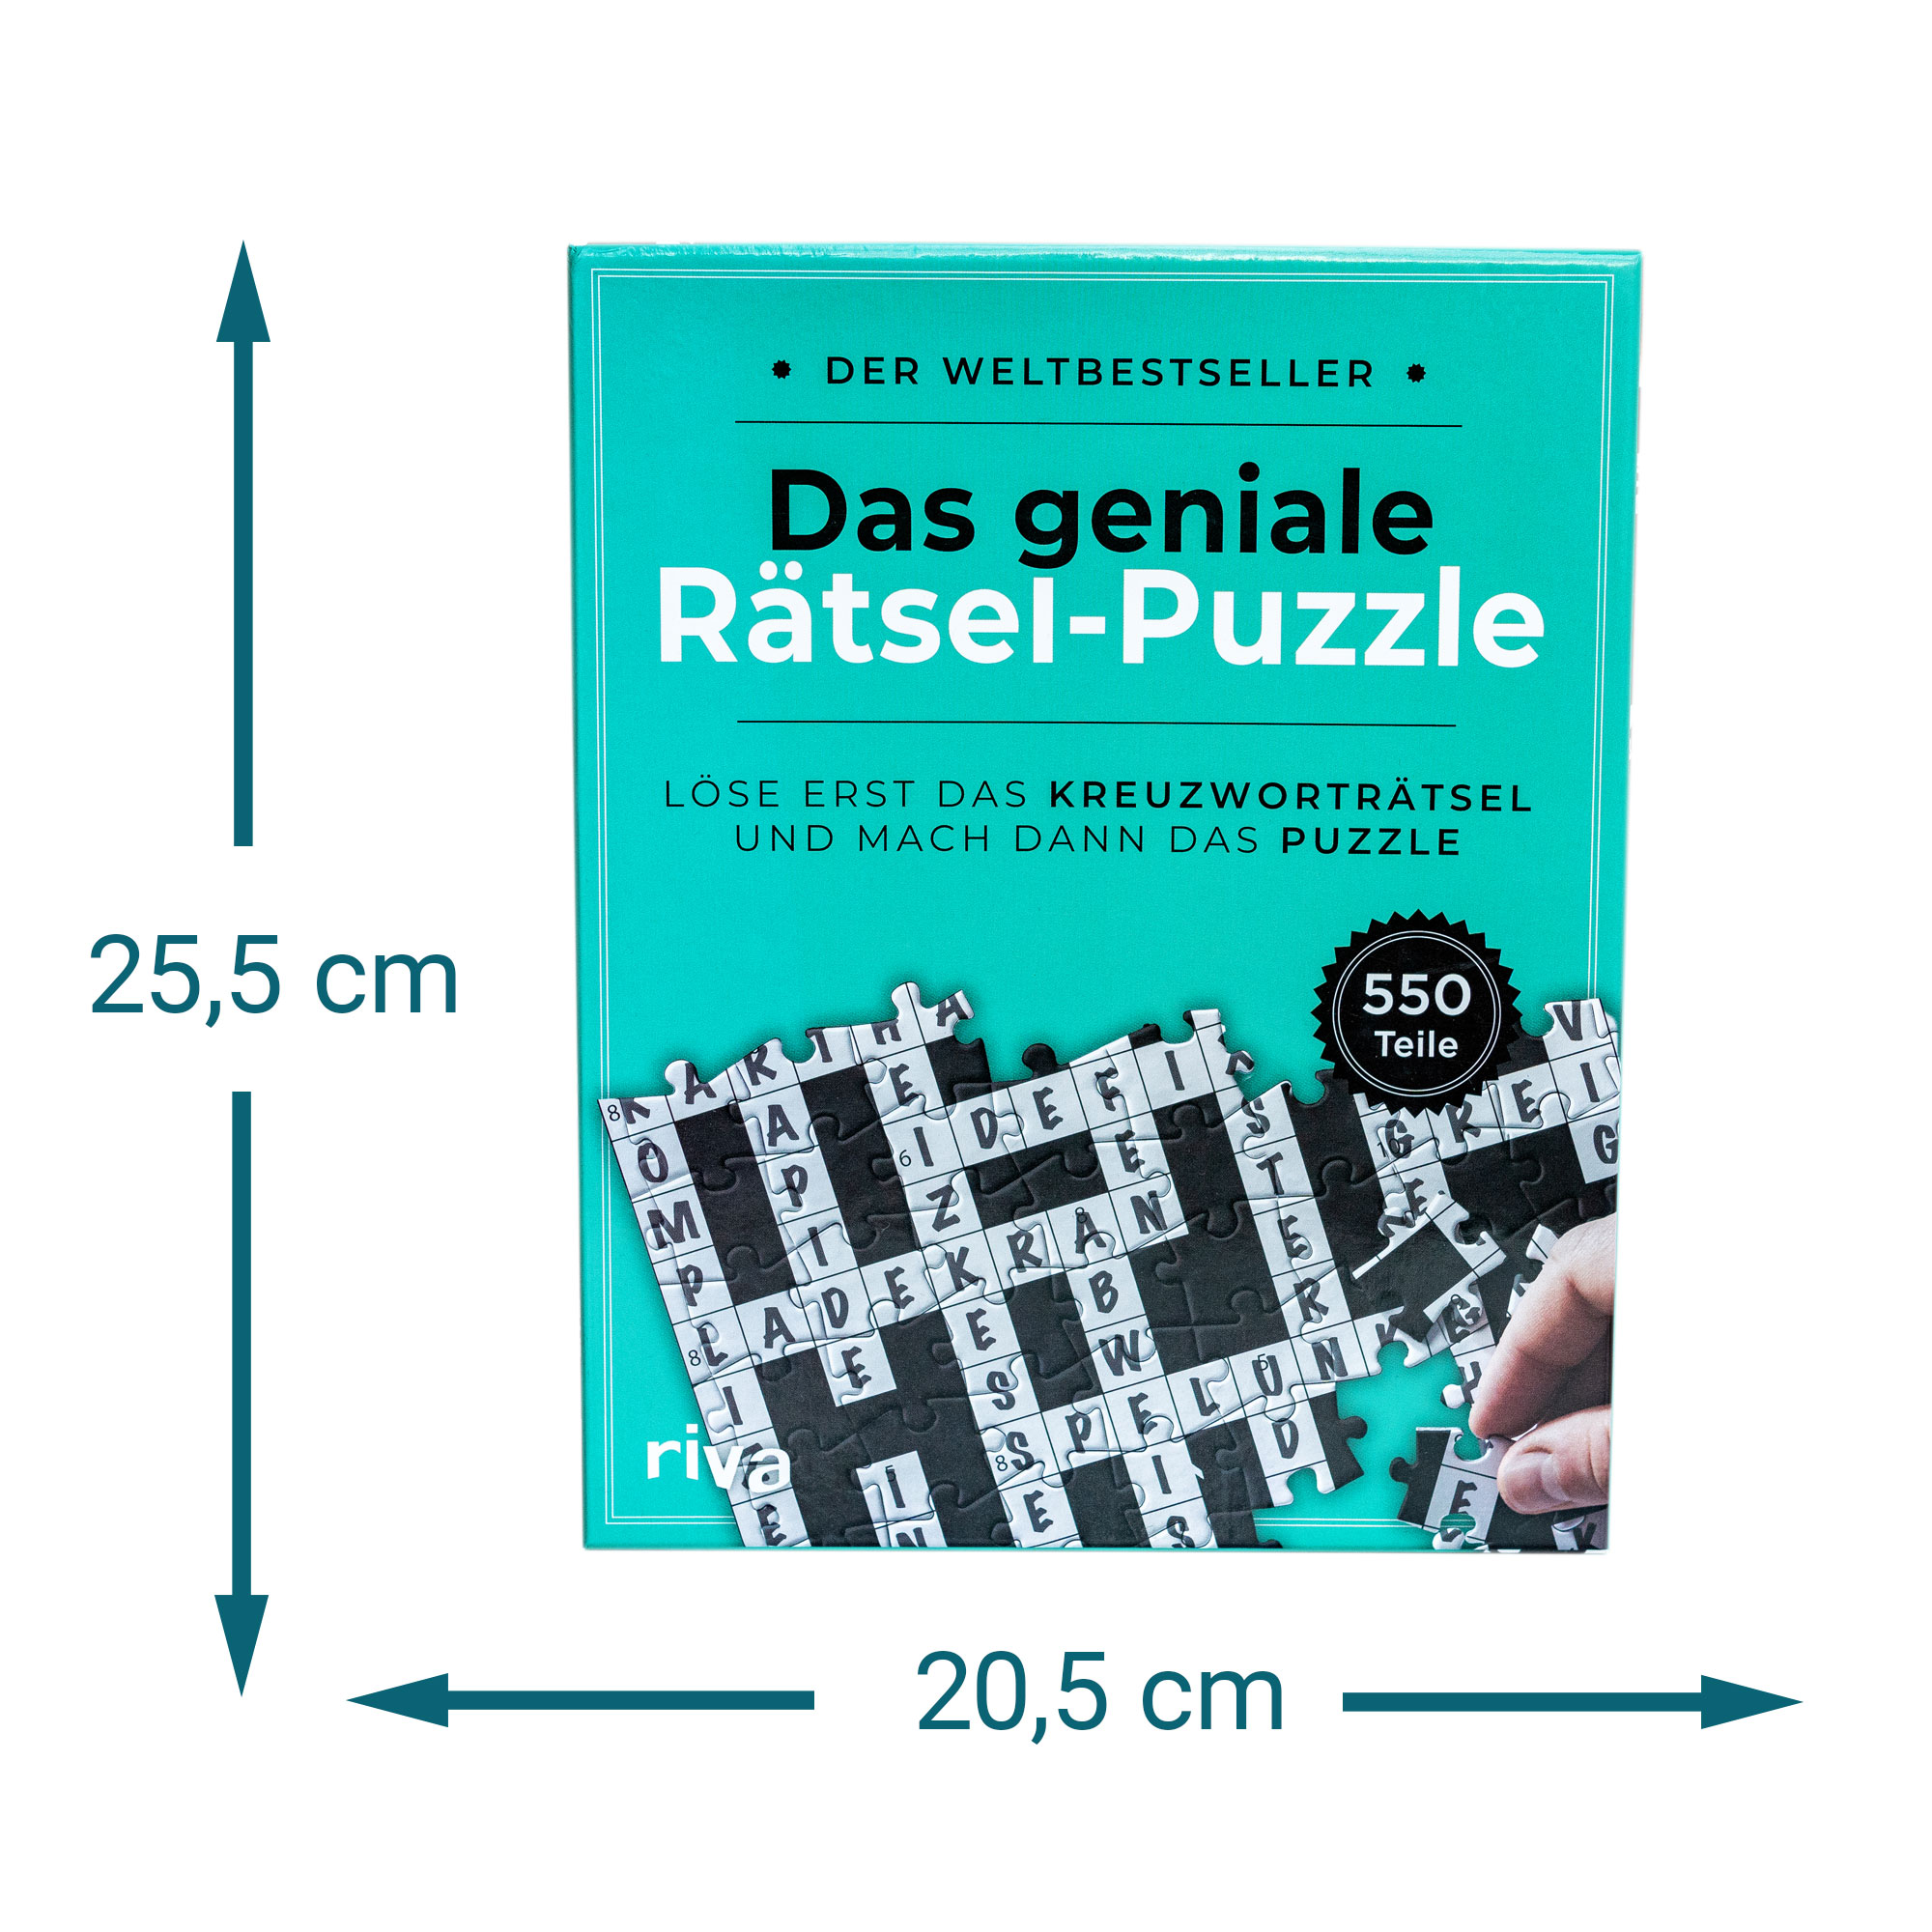 Das geniale Rätsel-Puzzle 4114 - 7